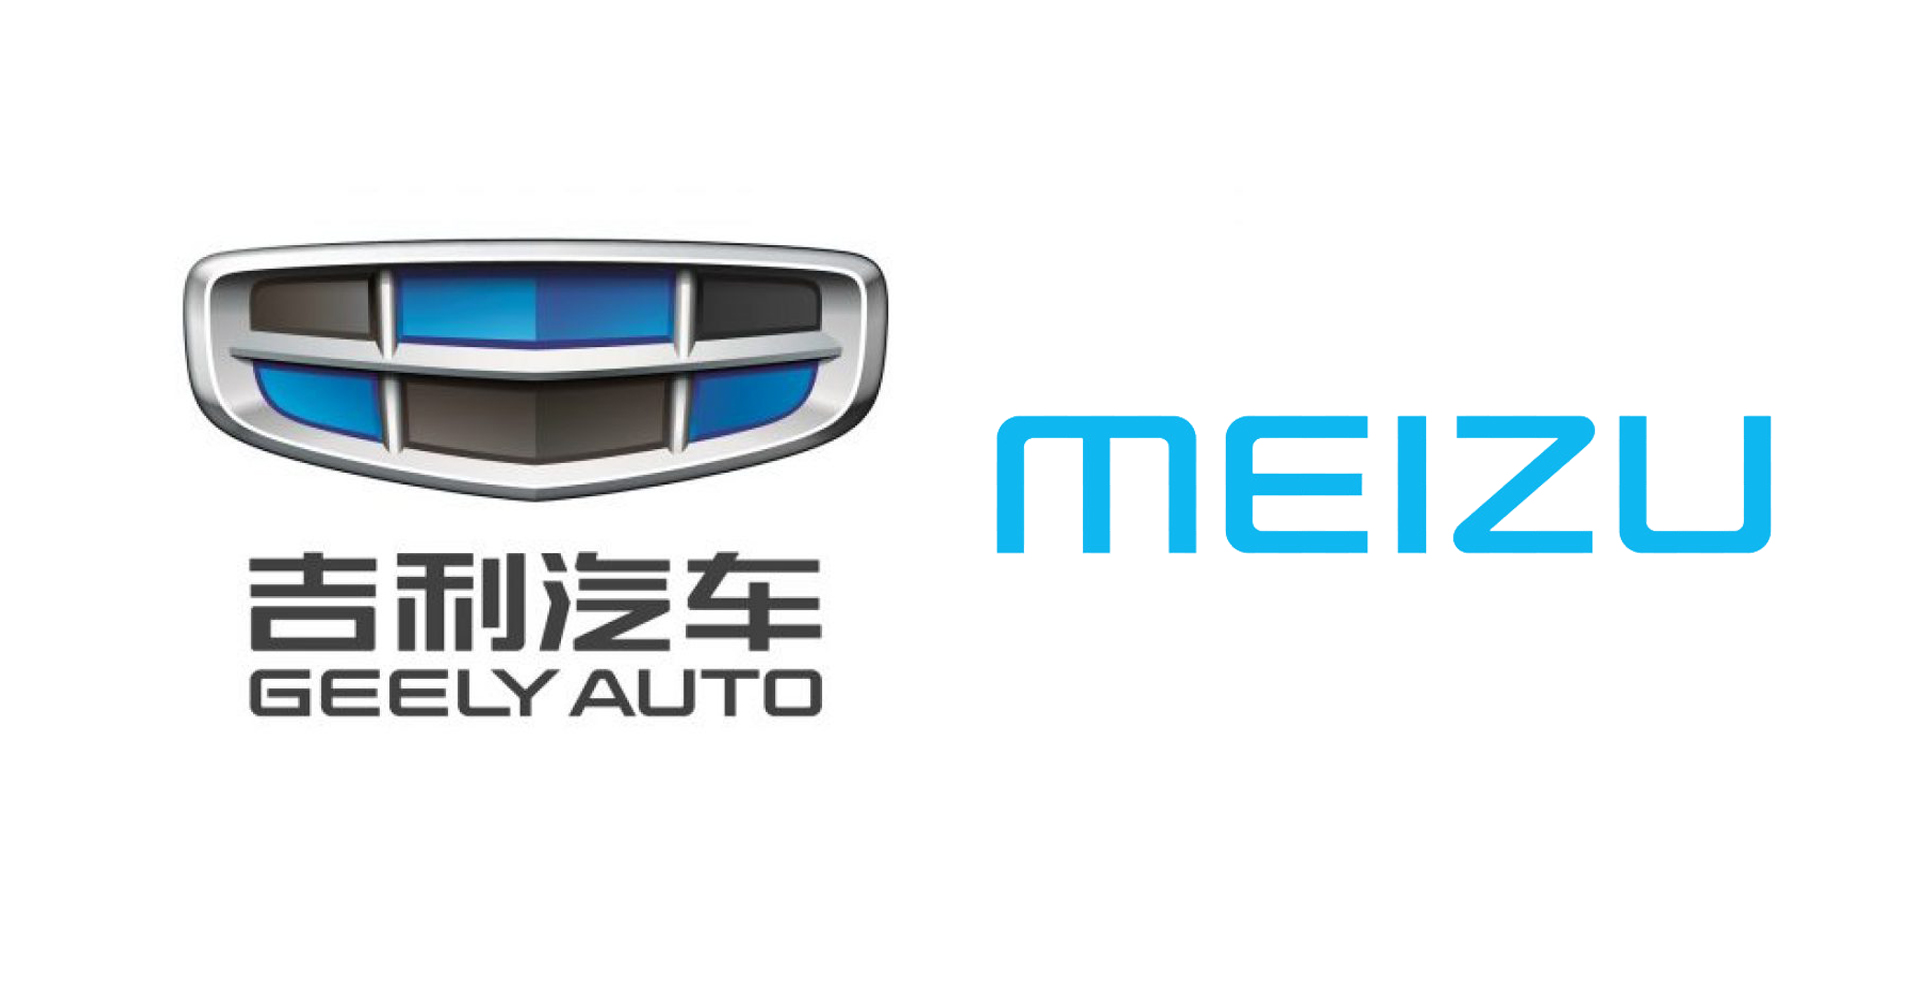 Geely ผู้ผลิตรถรายใหญ่ ปิดดีลซื้อกิจการ Meizu ผู้ผลิตสมาร์ตโฟนของจีน